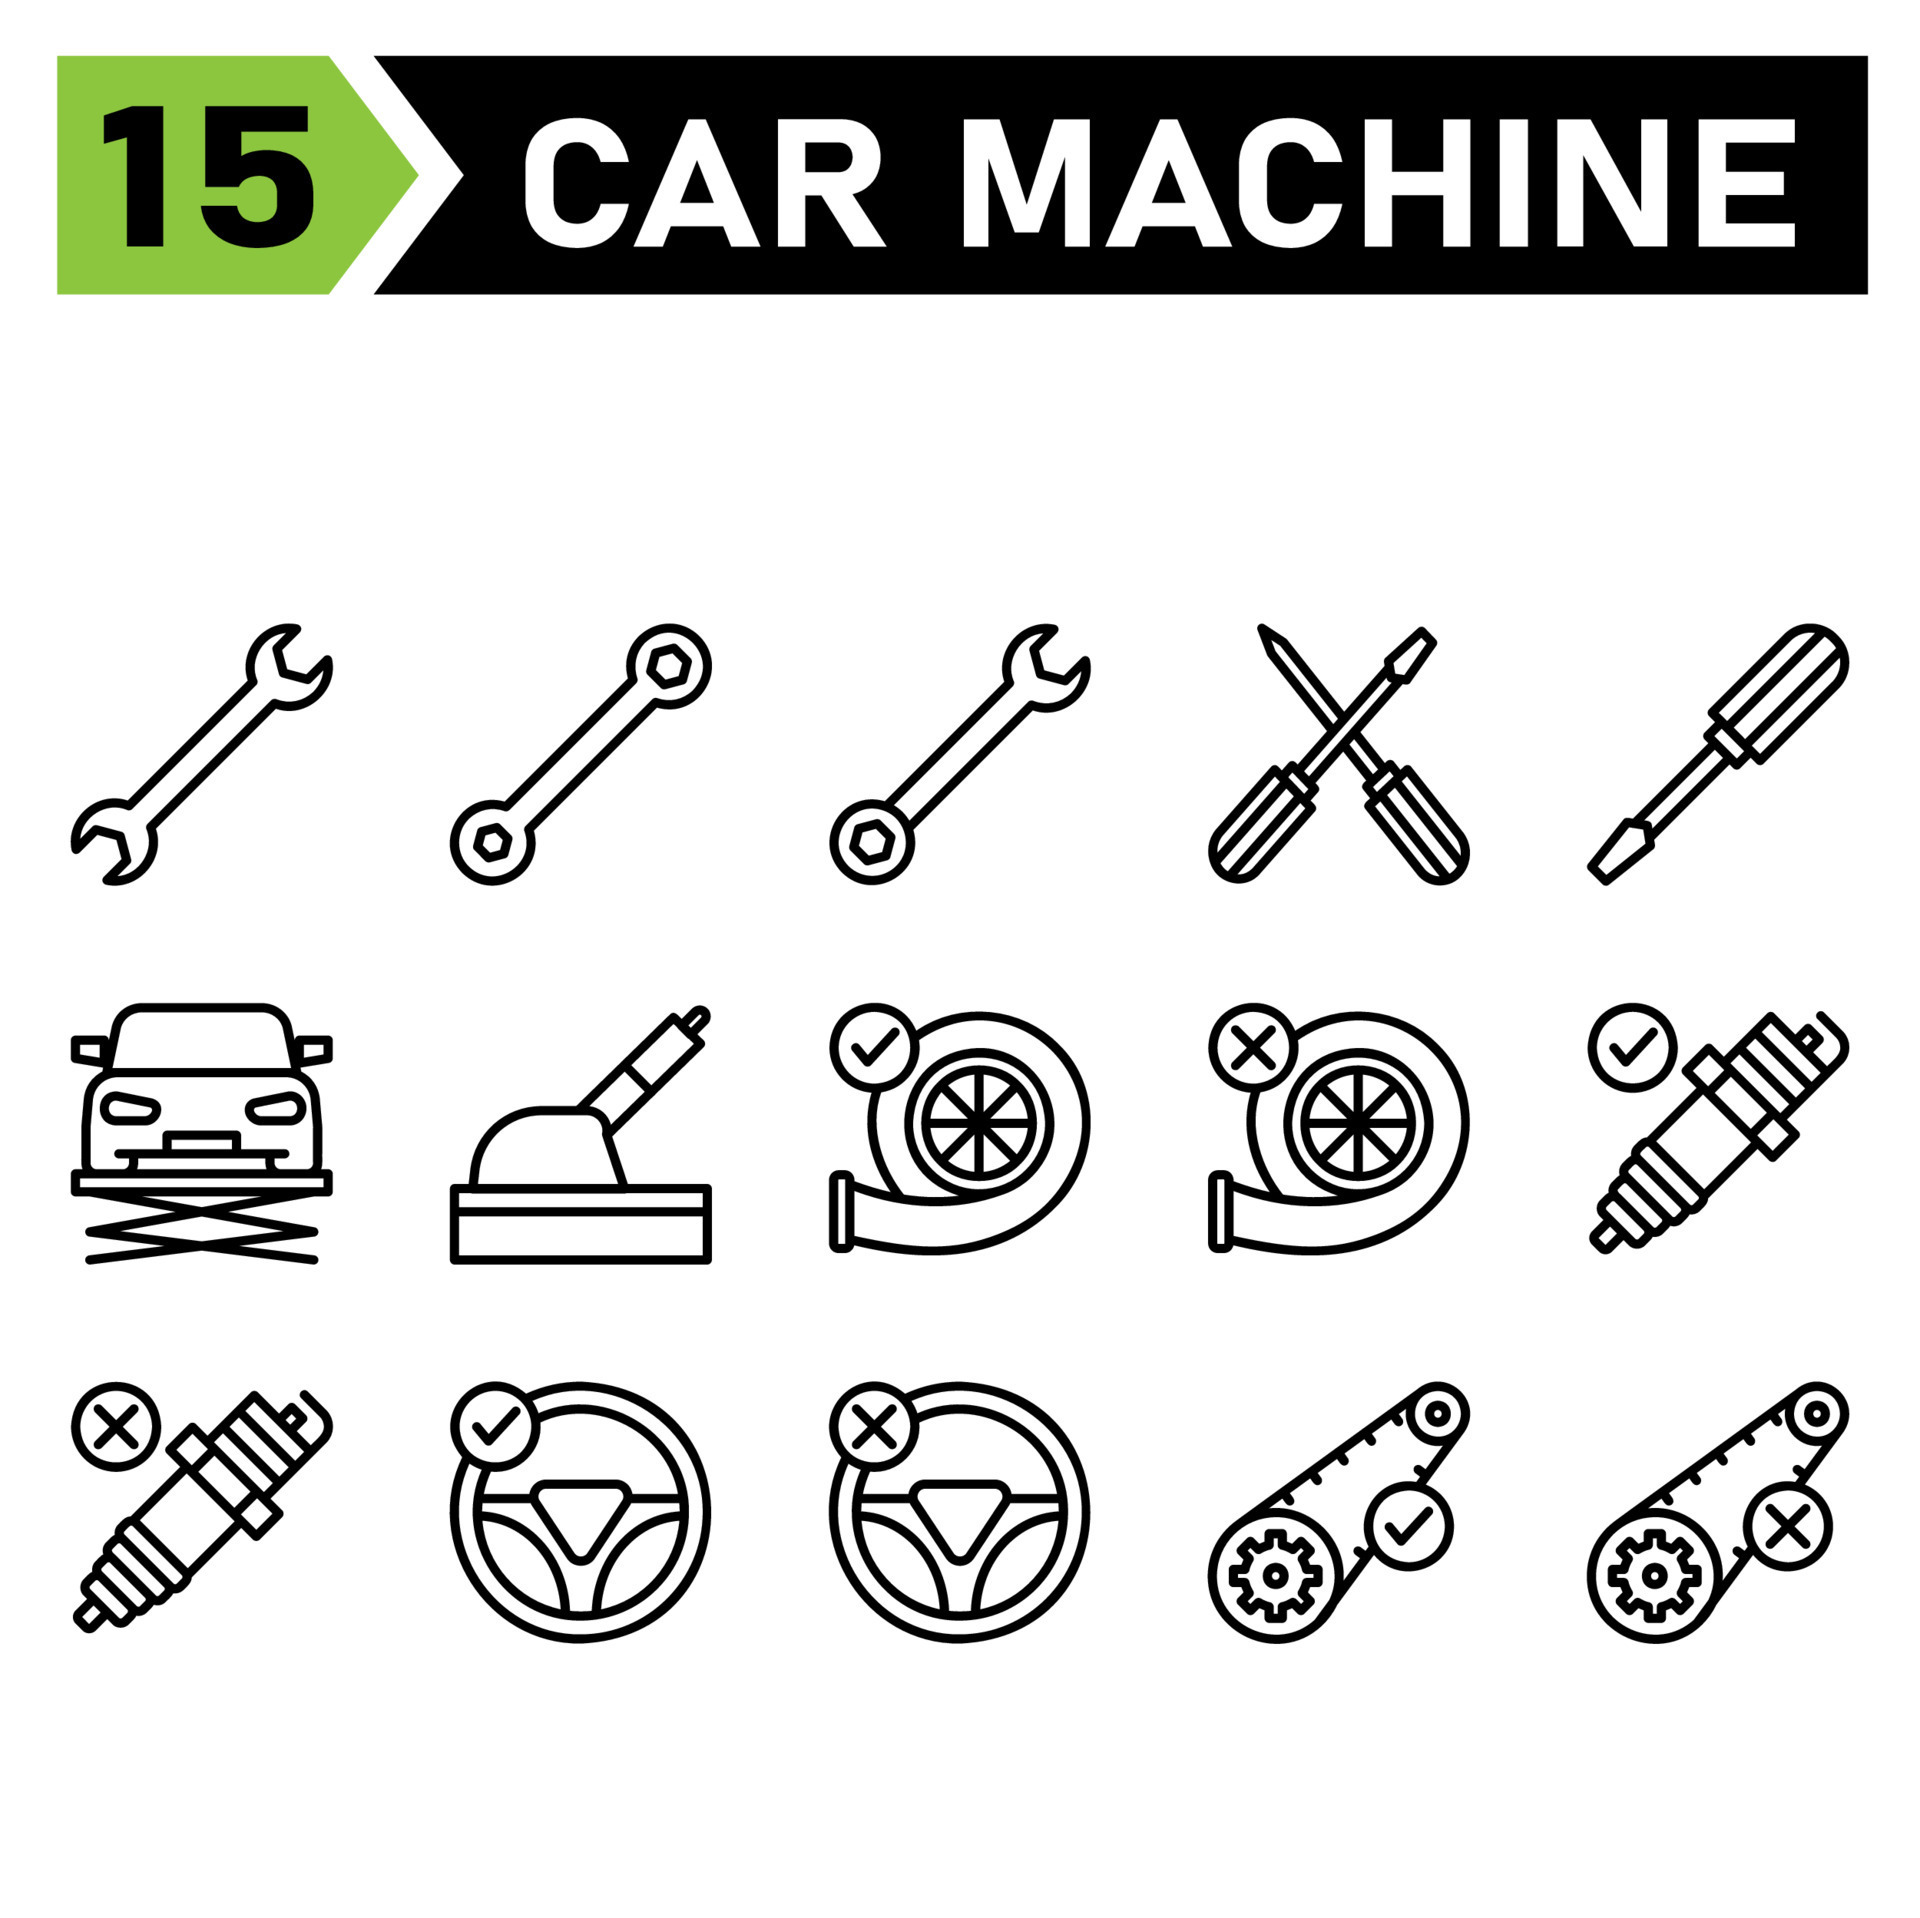 Das Symbolset für Automaschinen umfasst Werkzeuge, Werkzeug